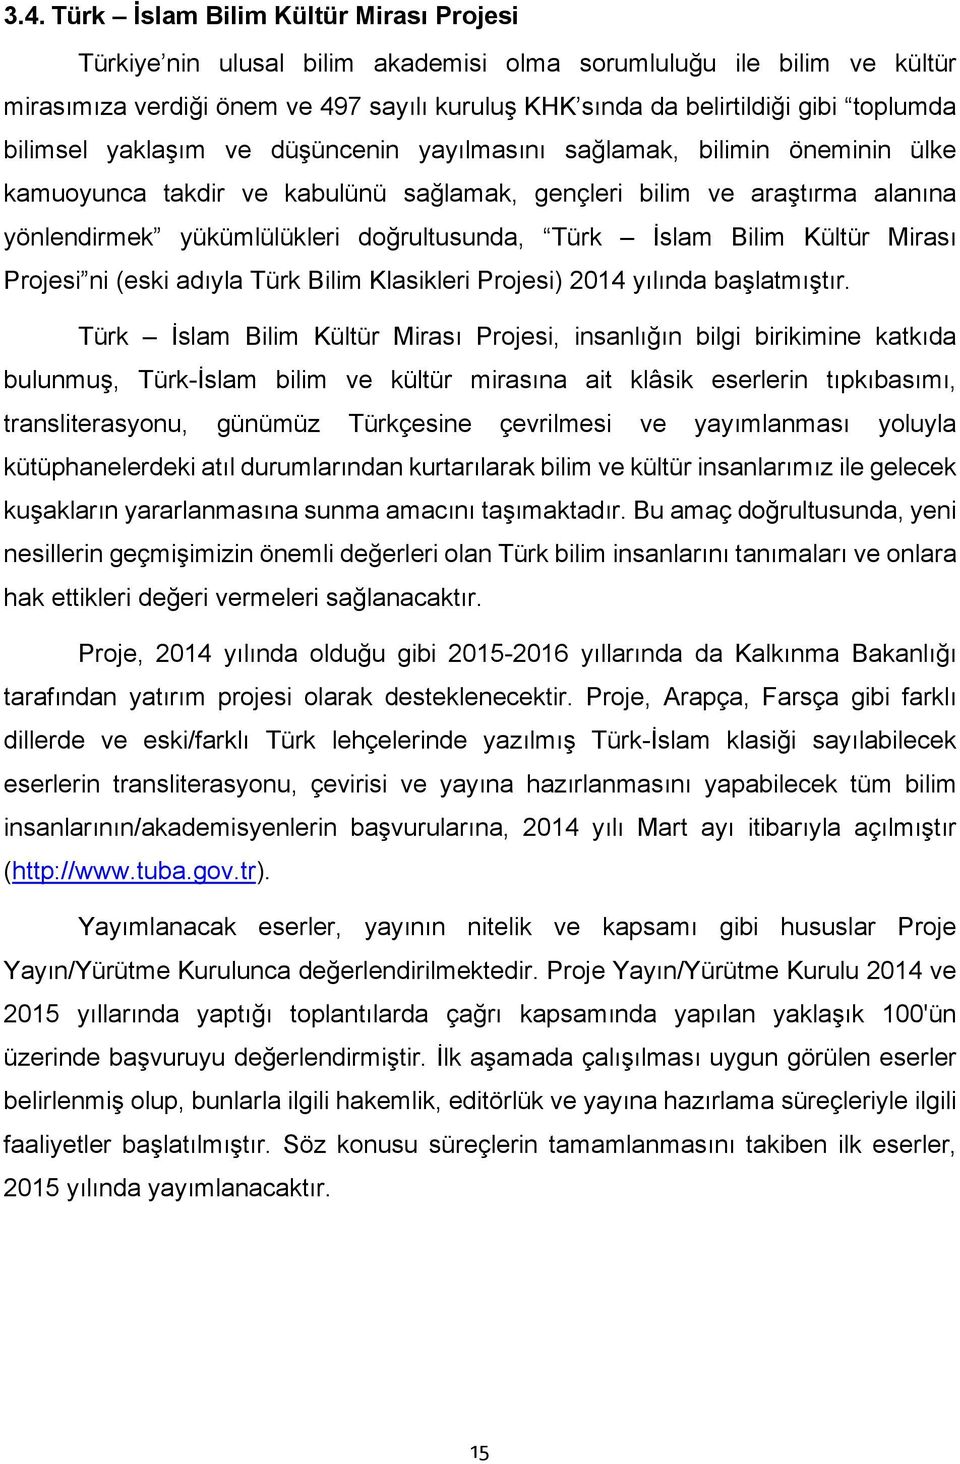 doğrultusunda, Türk İslam Bilim Kültür Mirası Projesi ni (eski adıyla Türk Bilim Klasikleri Projesi) 2014 yılında başlatmıştır.